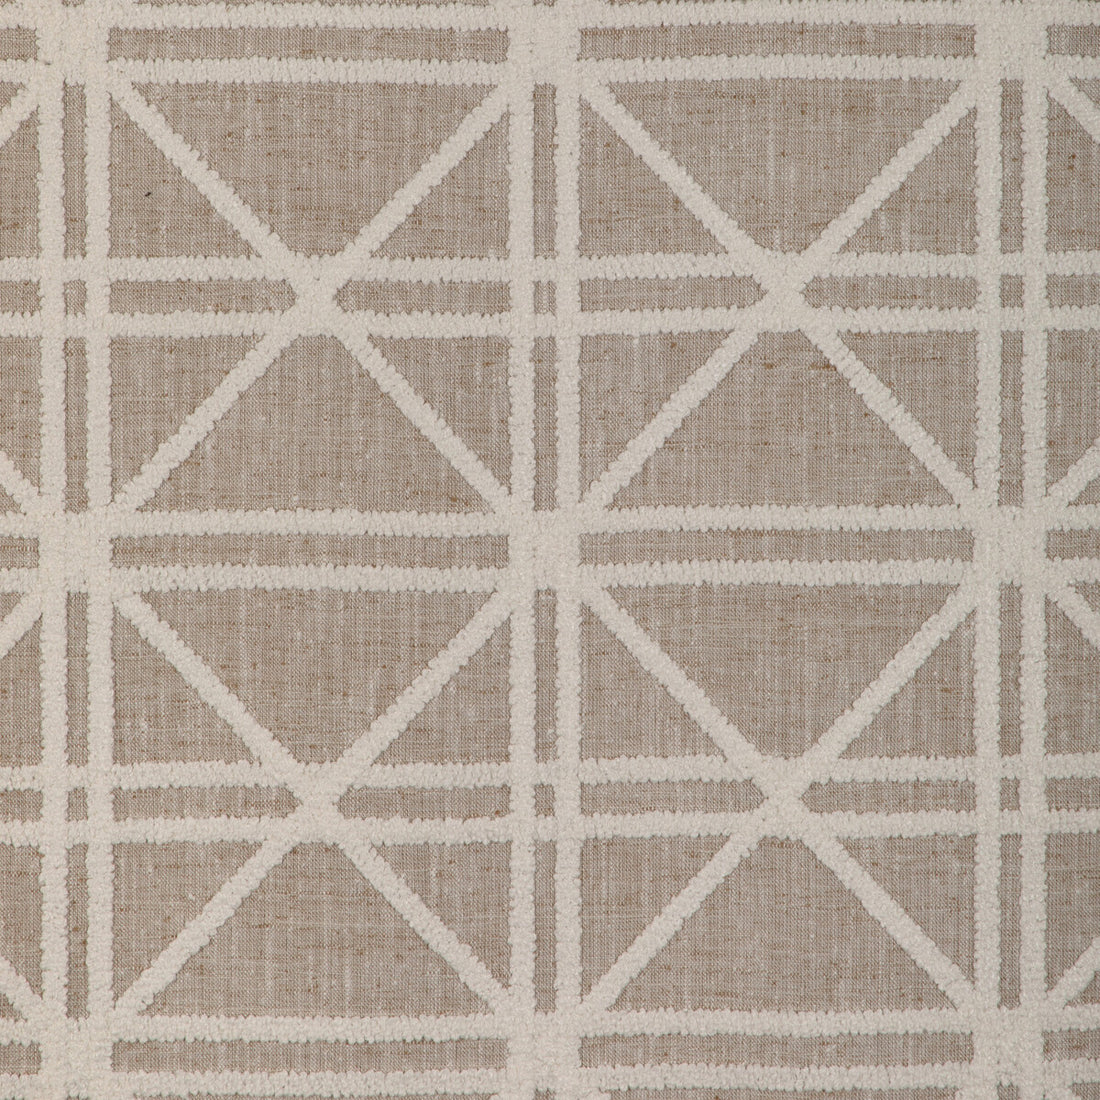 Kravet Design fabric in 37089-1601 color - pattern 37089.1601.0 - by Kravet Design